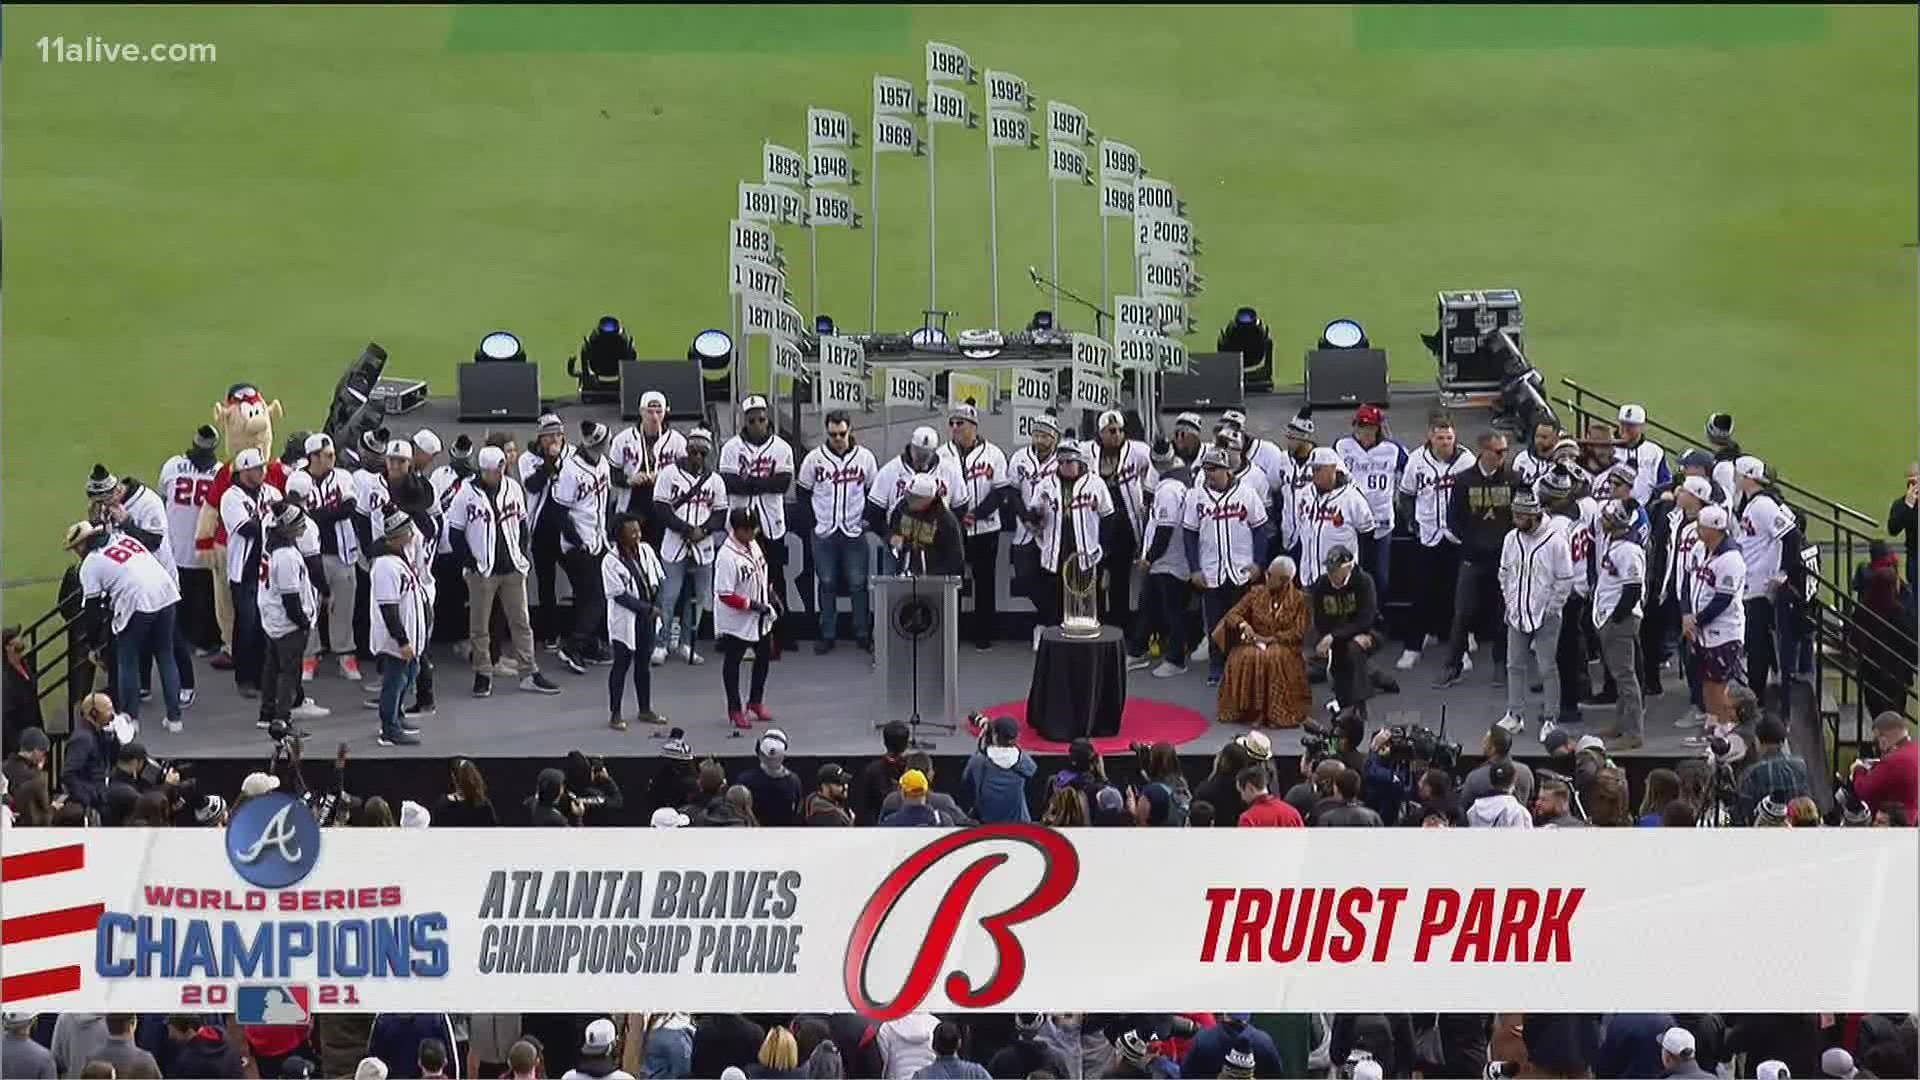 Atlanta Mayor Keisha Lance Bottoms made an appearance at Truist Park for the Atlanta Braves' Friday celebration. The Atlanta mayor's reception, however, was mixed.